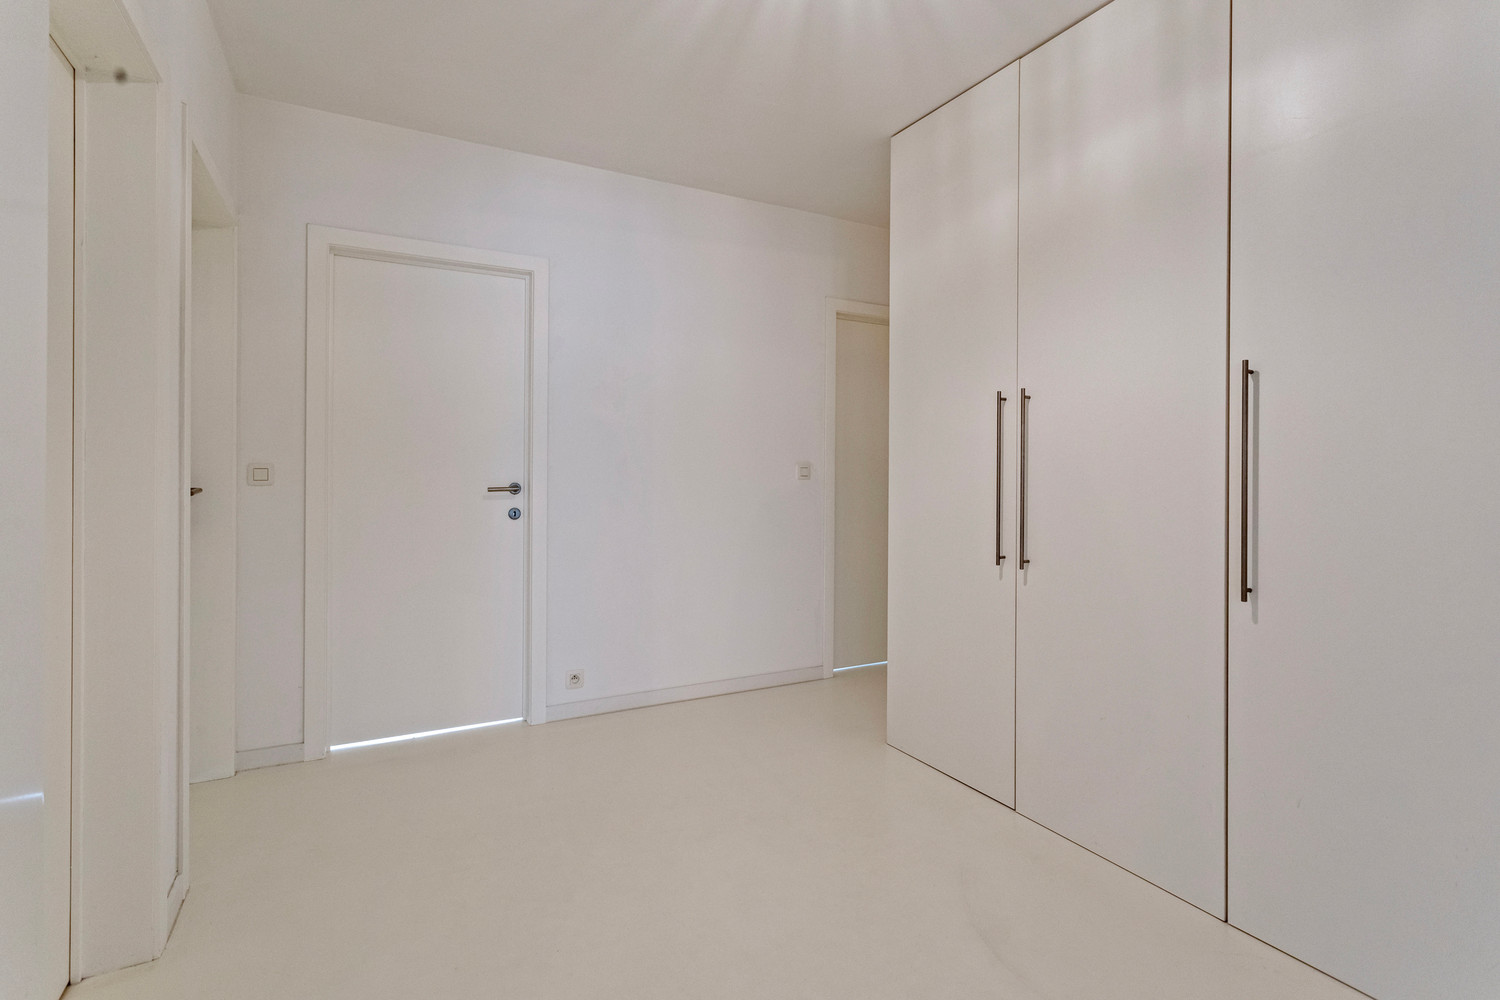 Instapklaar trendy appartement op wandelafstand van het Boekenberg Park met 3 slks, ruim terras en garagebox! foto 18